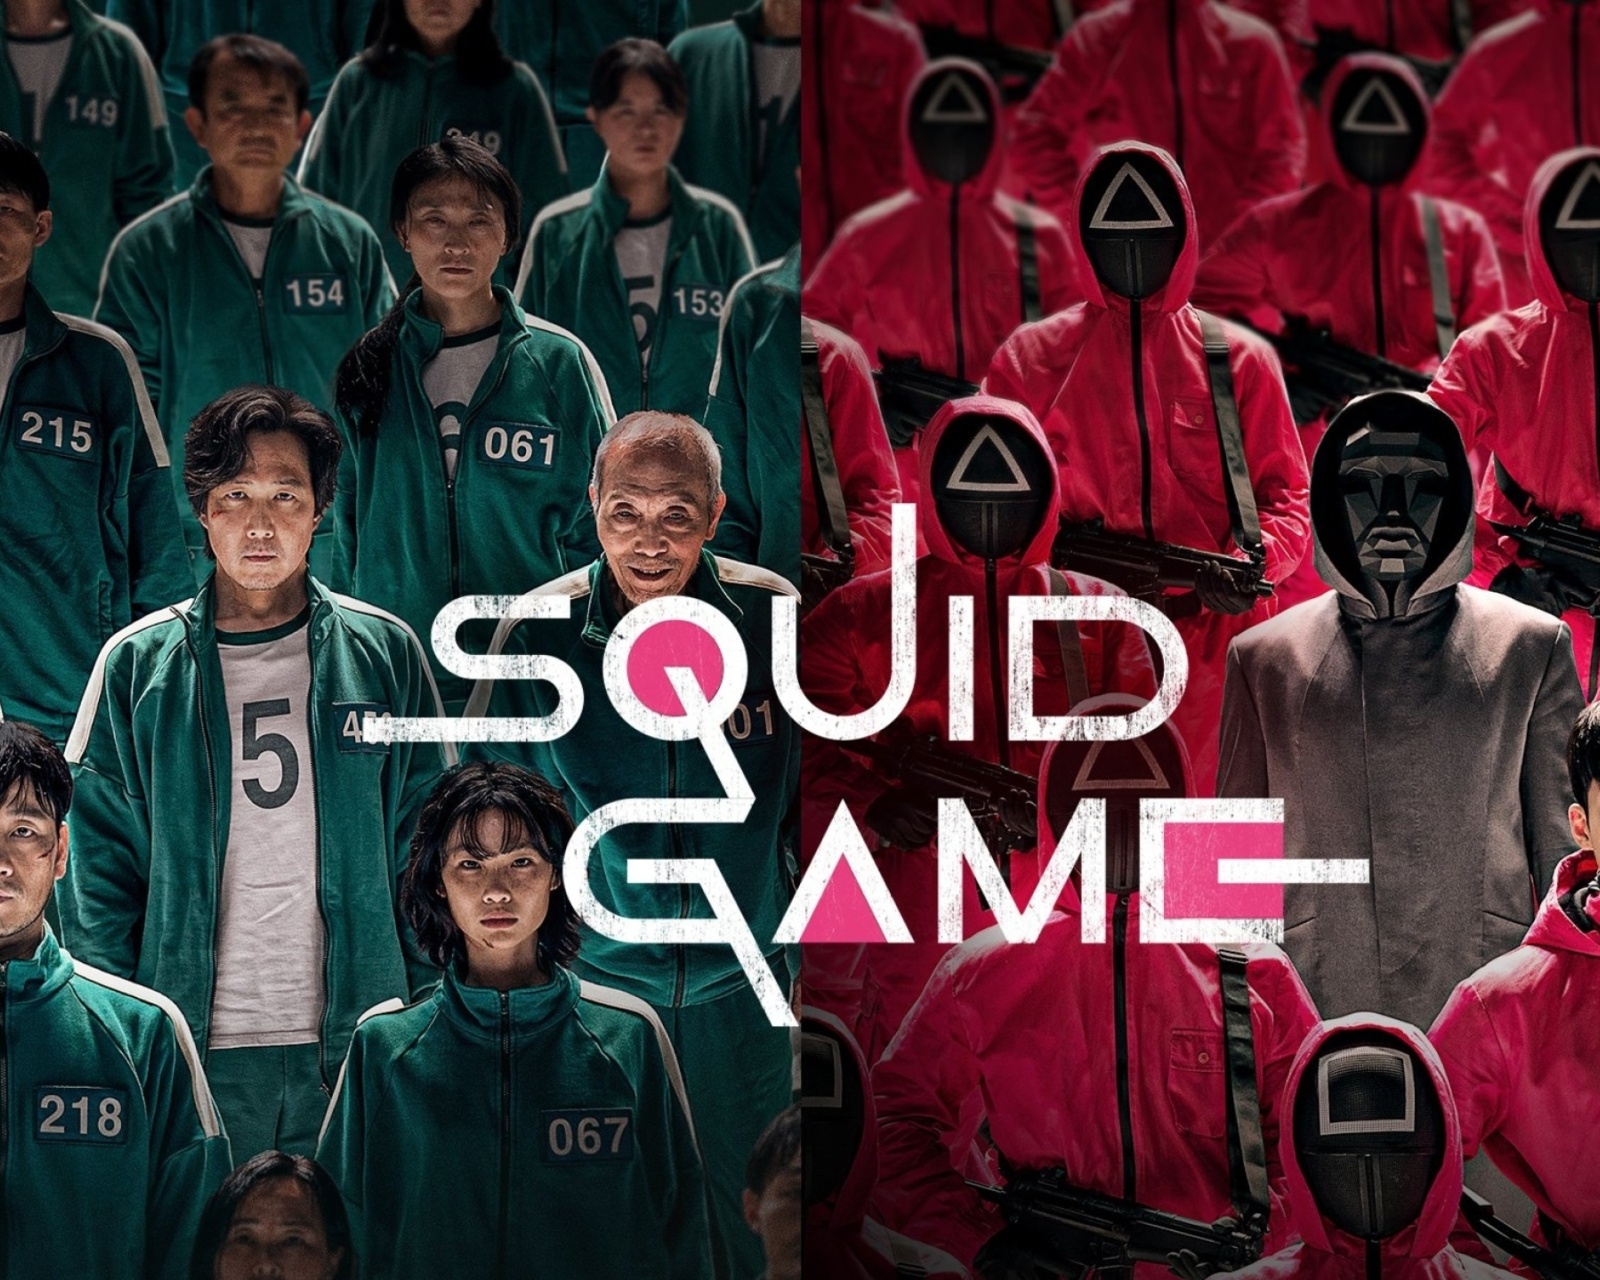 Das Squid Game Online Wallpaper 1600x1280